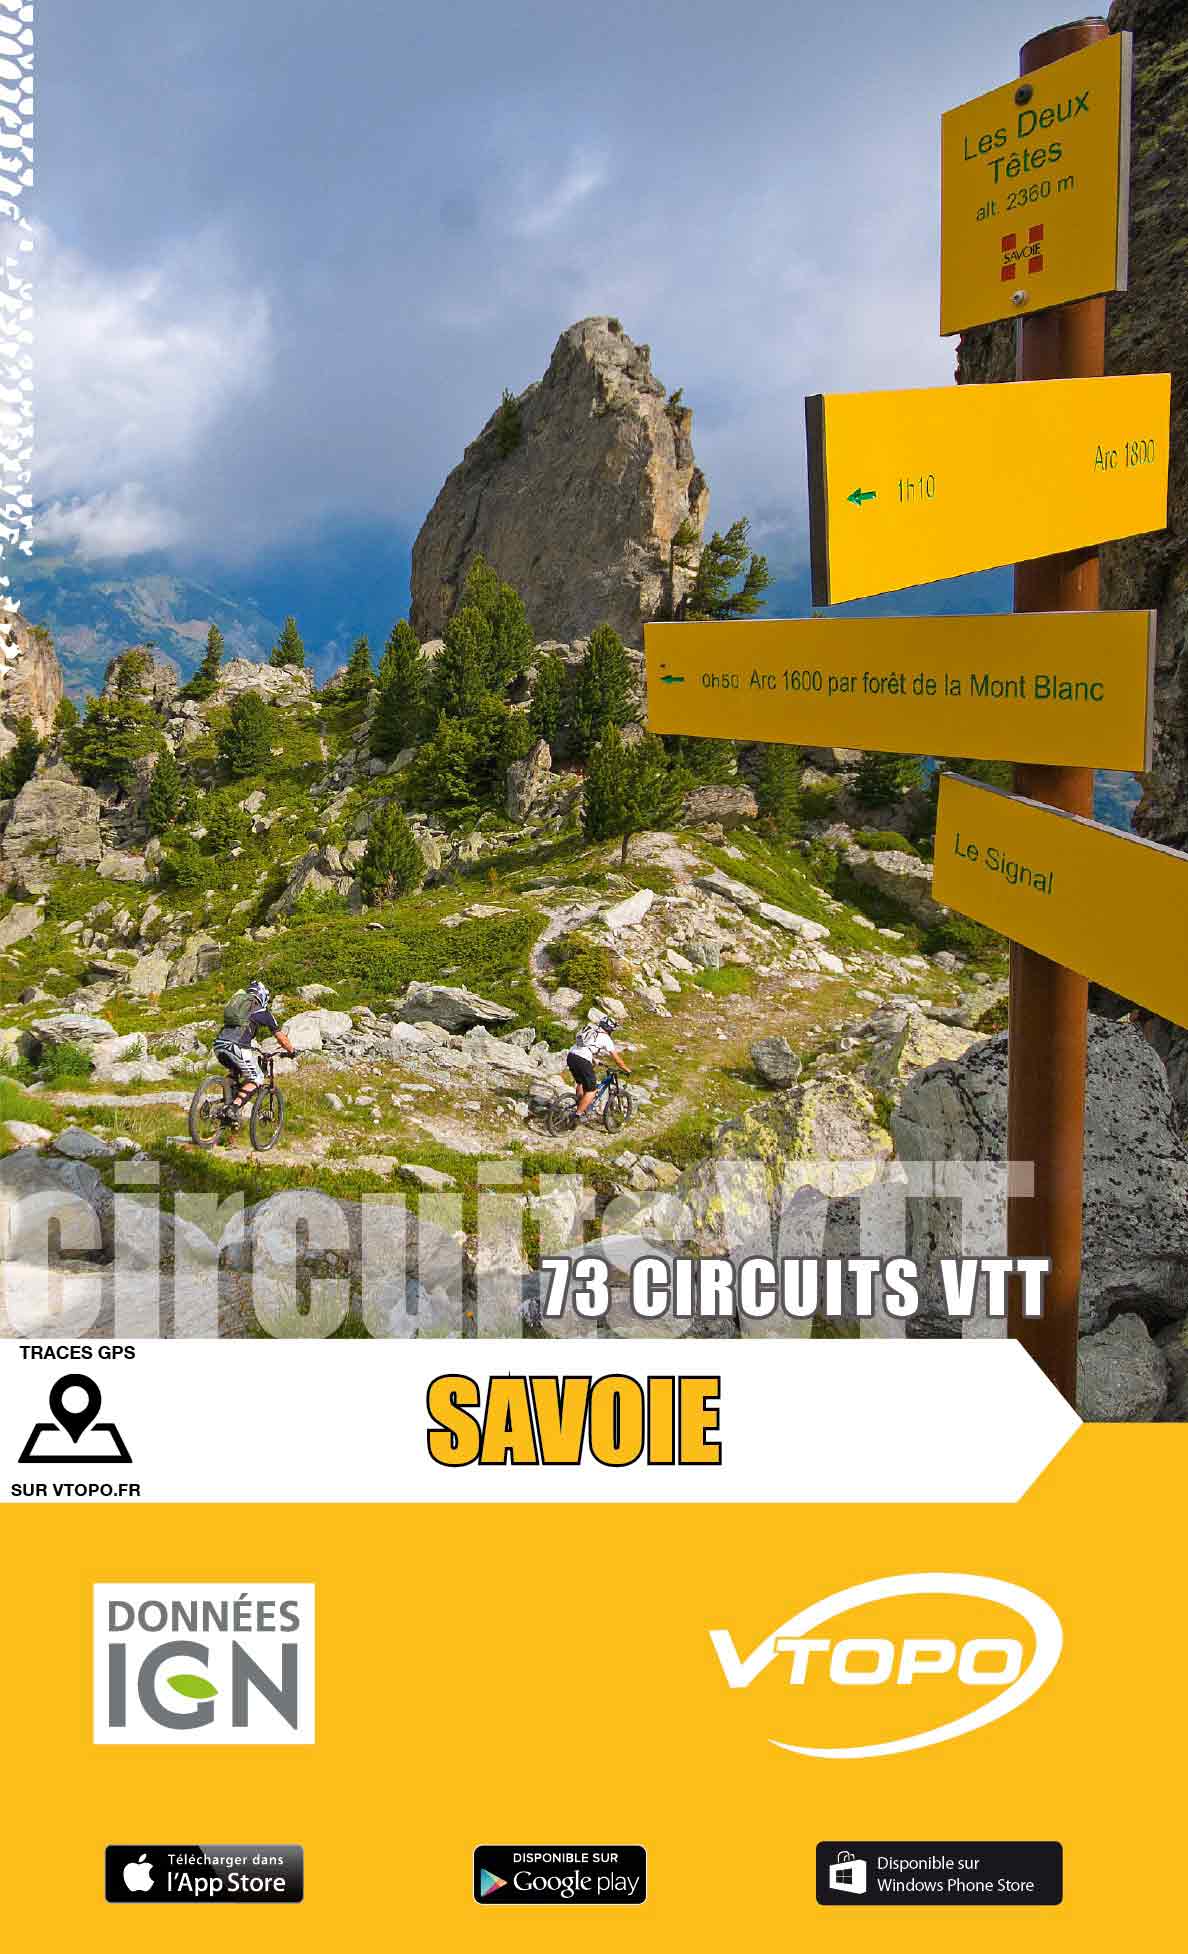 VTOPO VTT Savoie